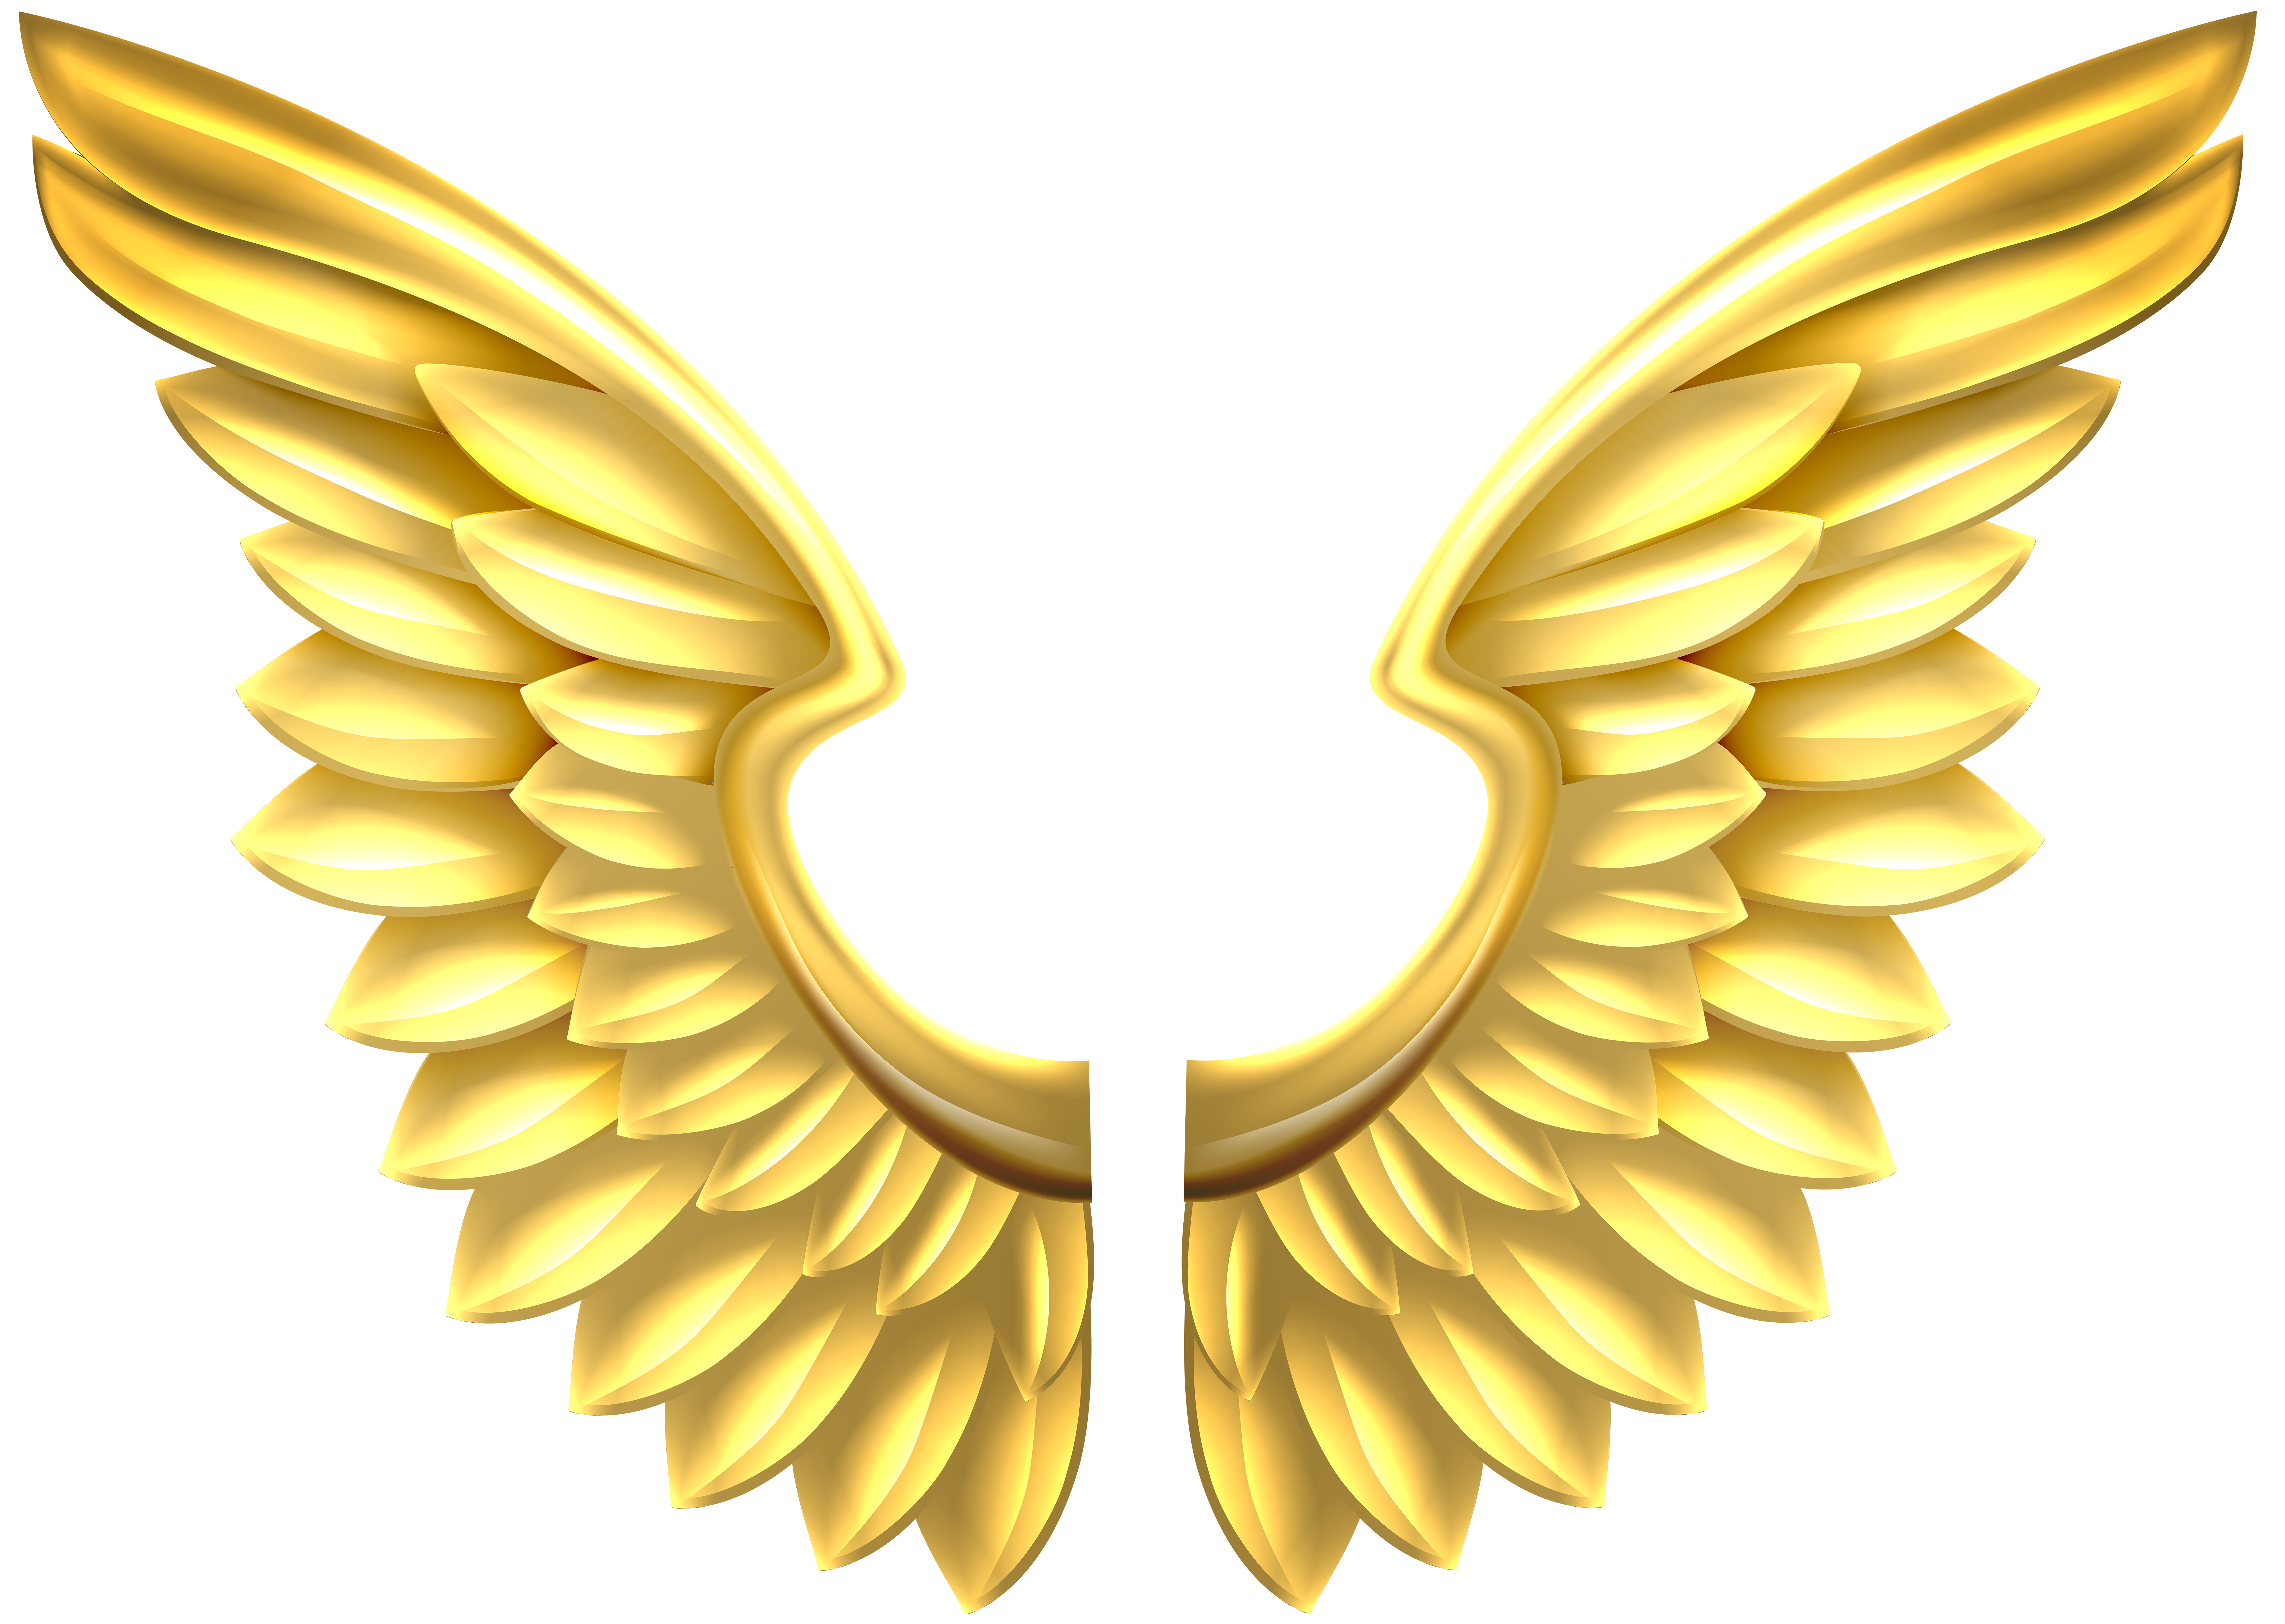 Золотые крылья 2. Золотые Крылья. Золотые Крылья ангела. Золотые ангельские Крылья. Логотип Крылья.